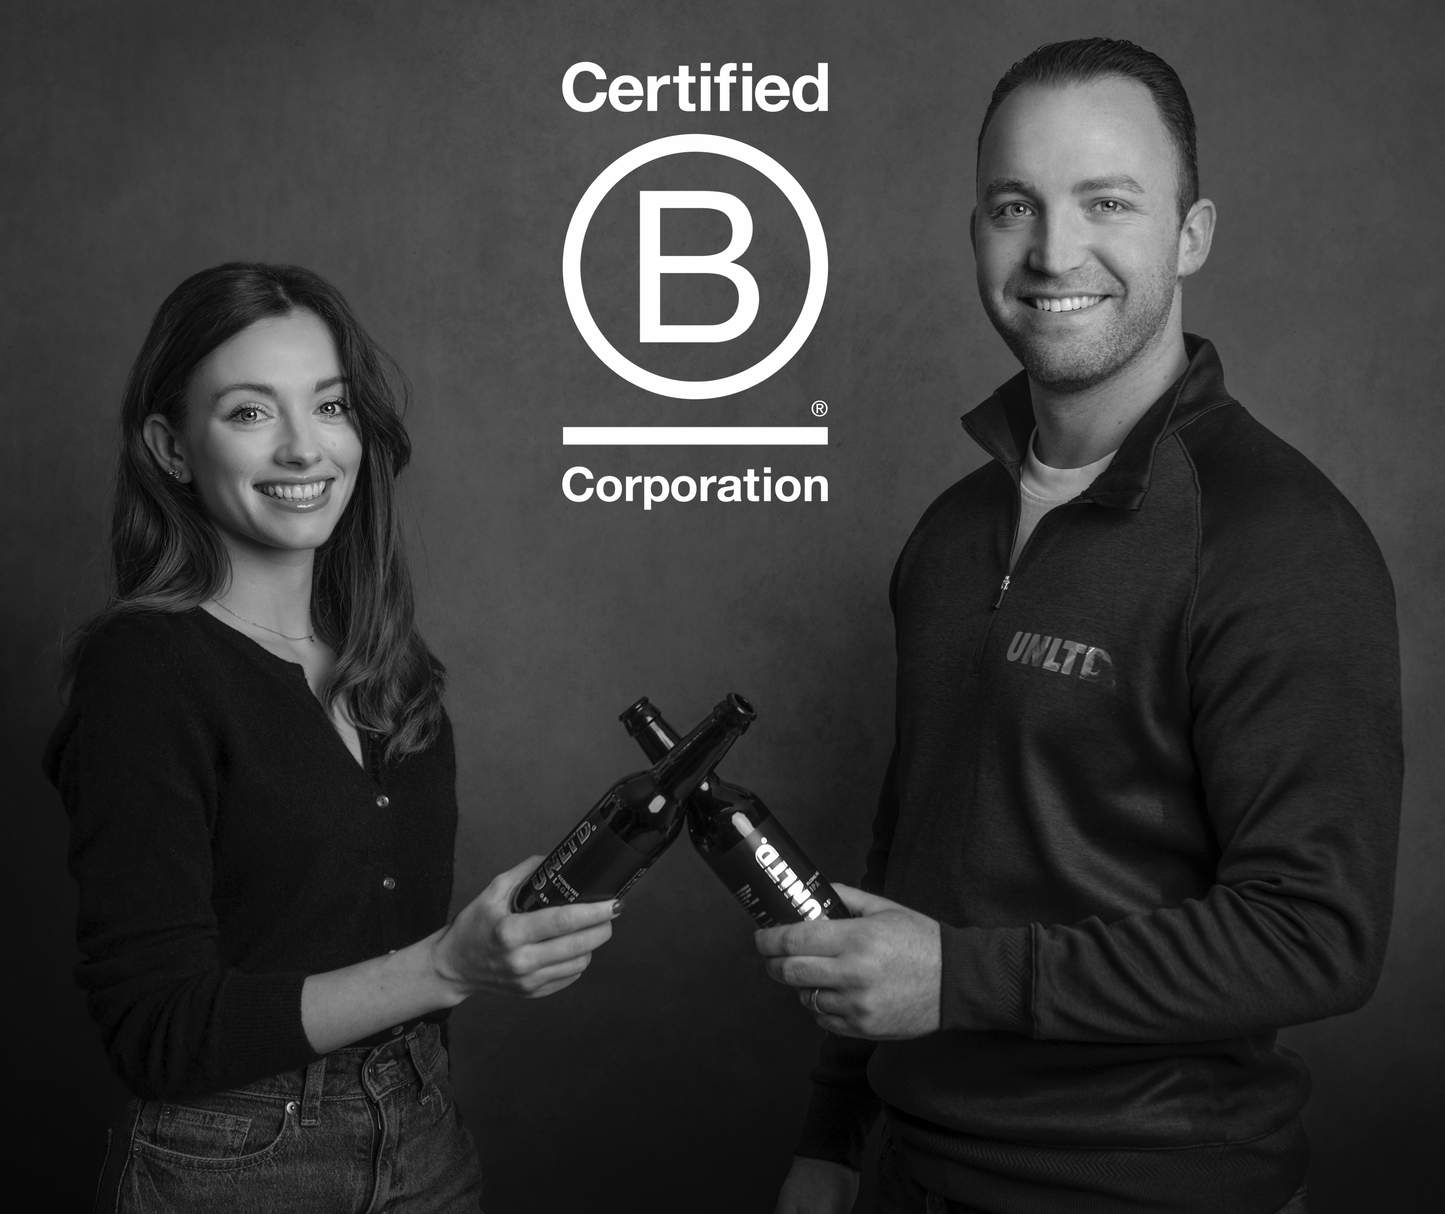 UNLTD. is now a certified B Corp!